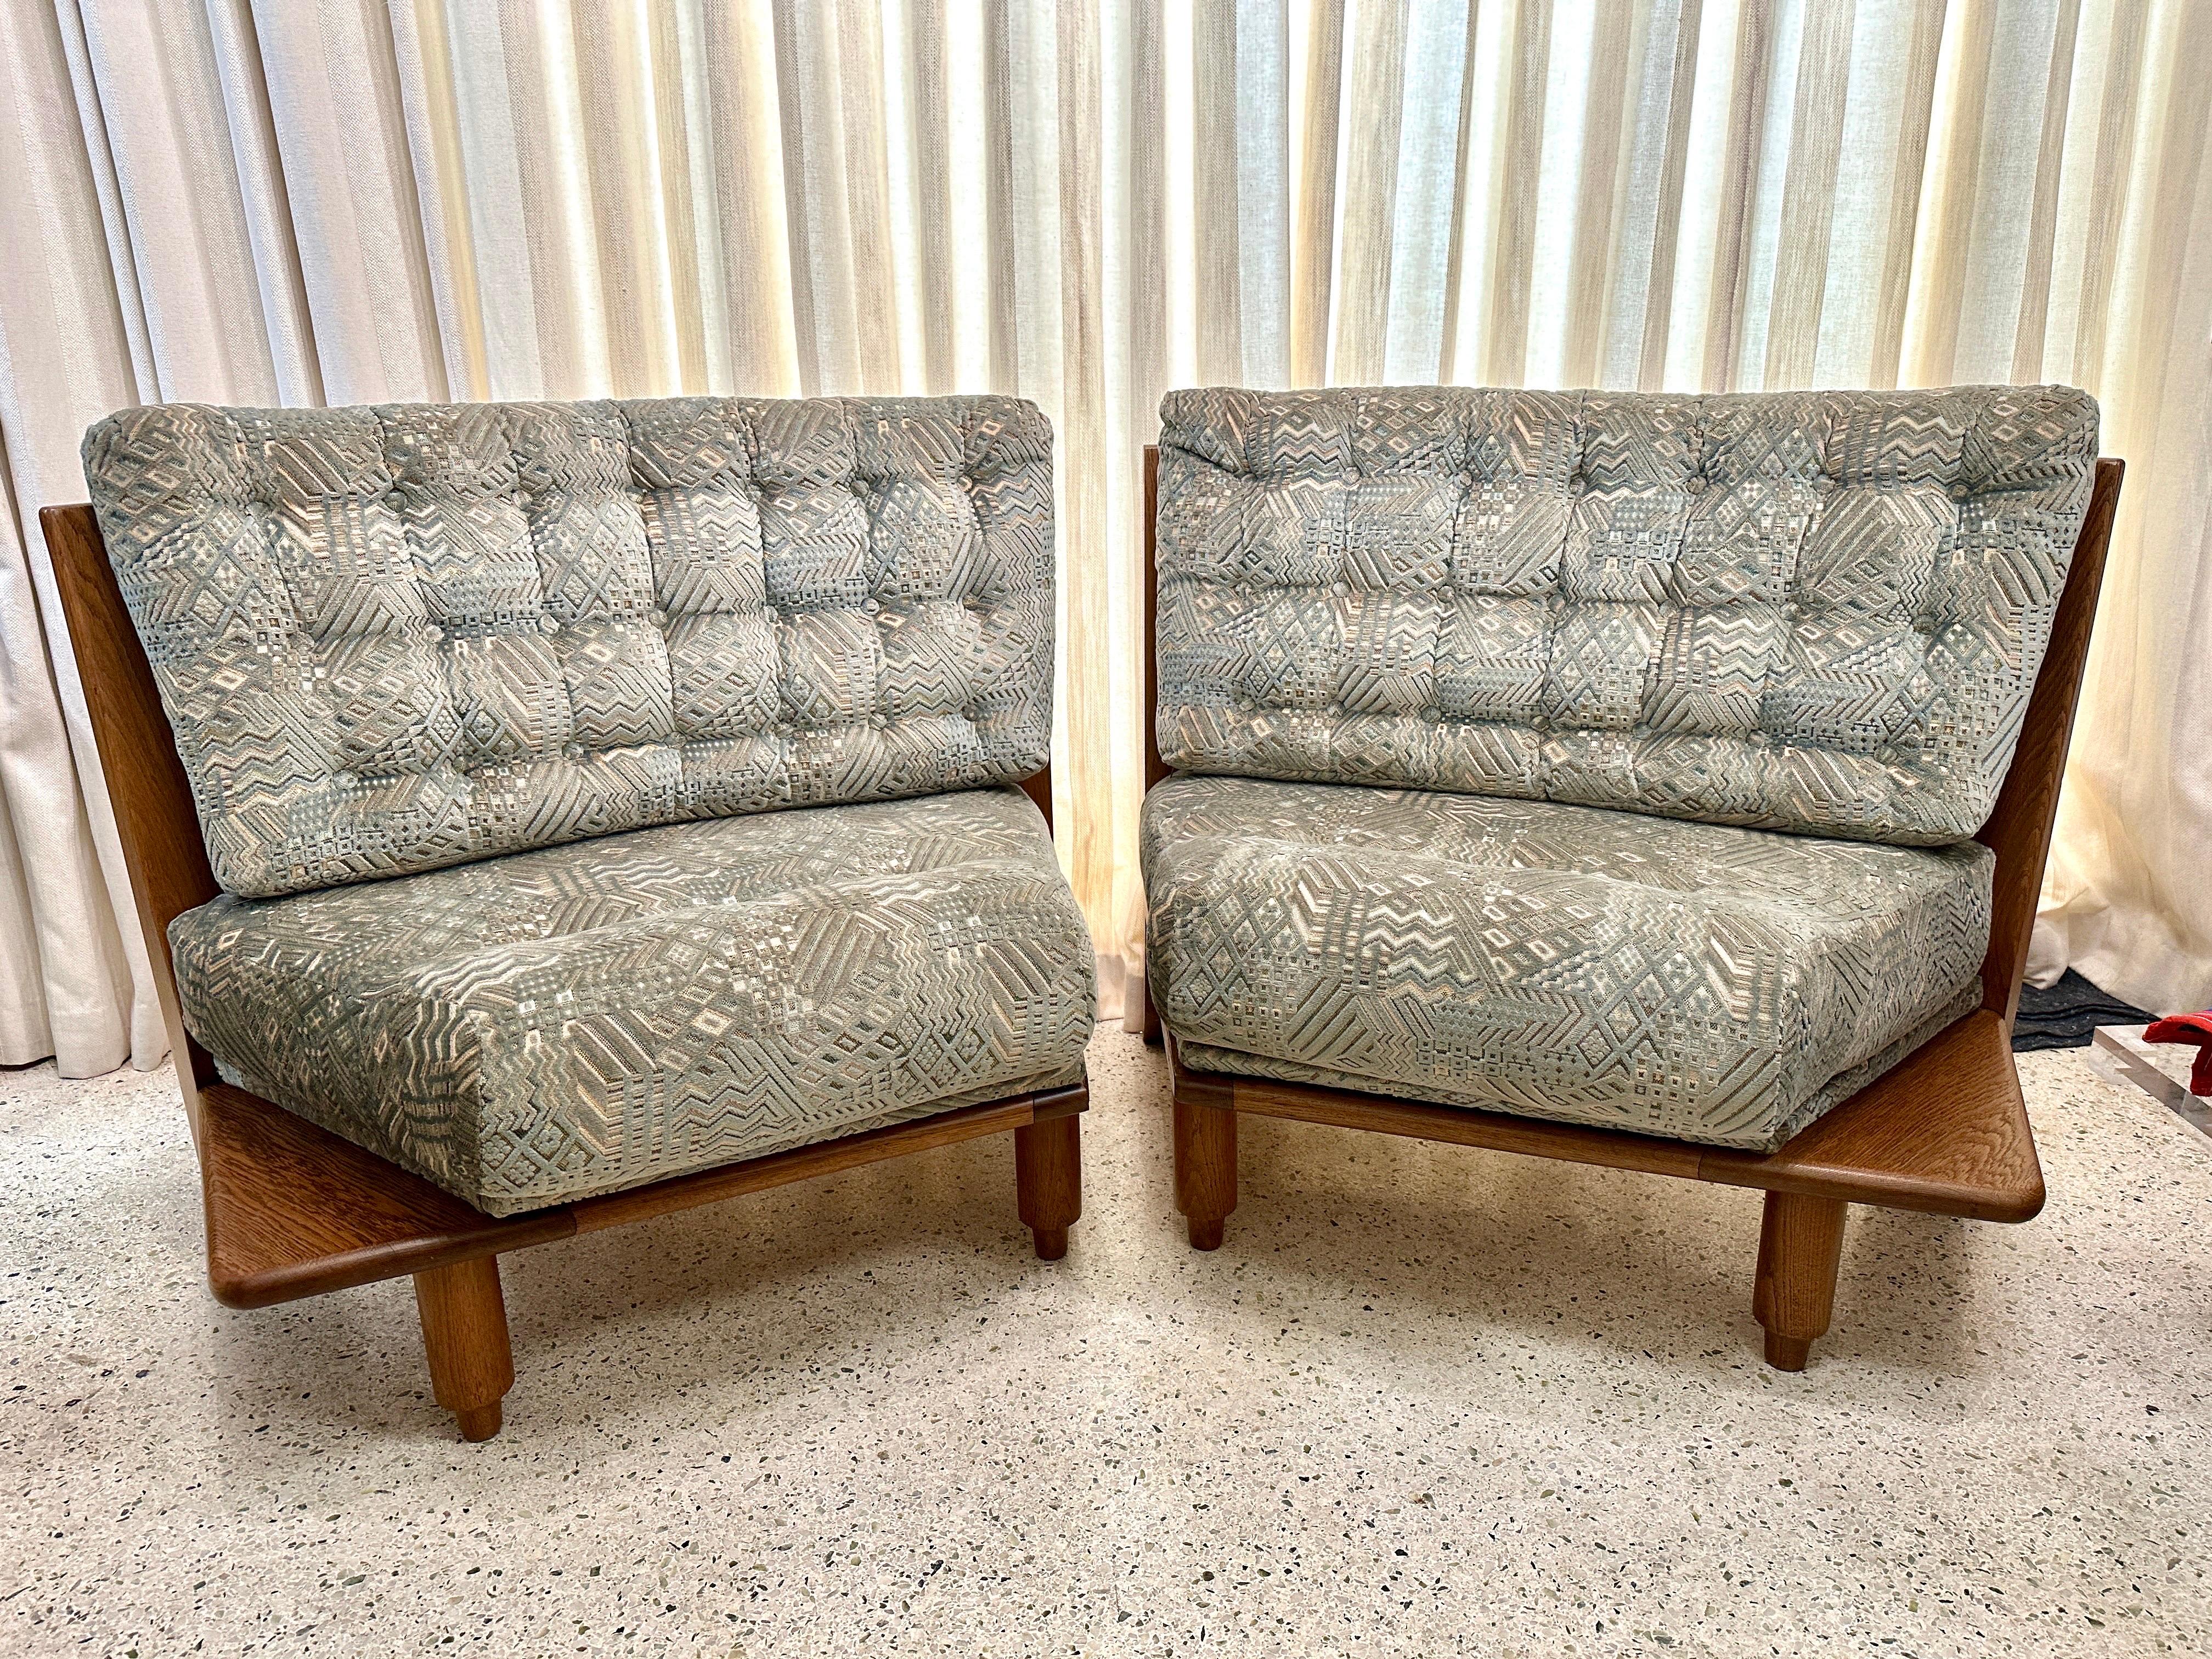 Dieses seltene und vielseitig einsetzbare Chambron-Sofa in 2 Teilen ermöglicht es, die beiden Sessel zusammen oder getrennt zu verwenden.  Jeder Stuhl hat ein kleines Holzregal für Getränke an der Seite und schöne Eichenholzlatten an der Rückseite. 